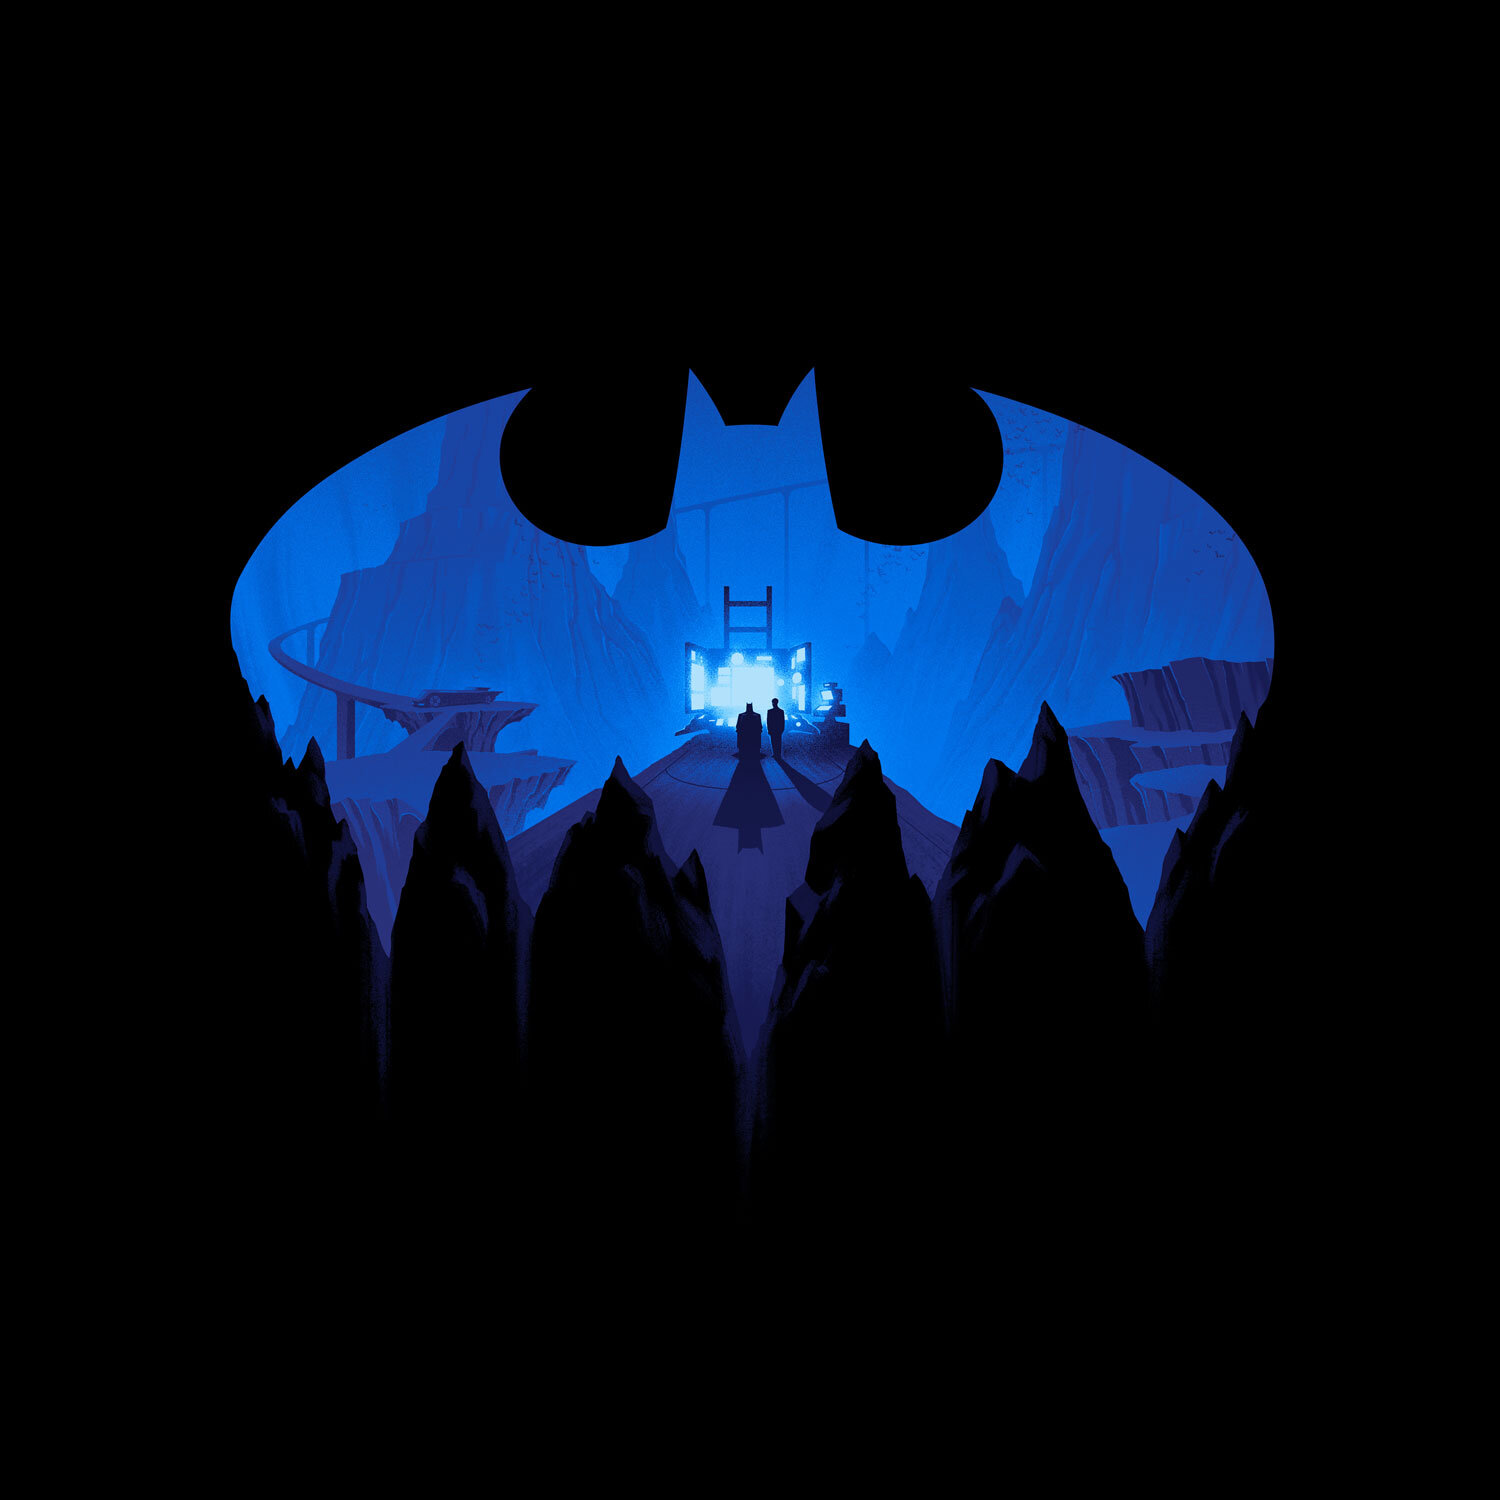 19+] Blue Batman Logo Wallpapers - WallpaperSafari